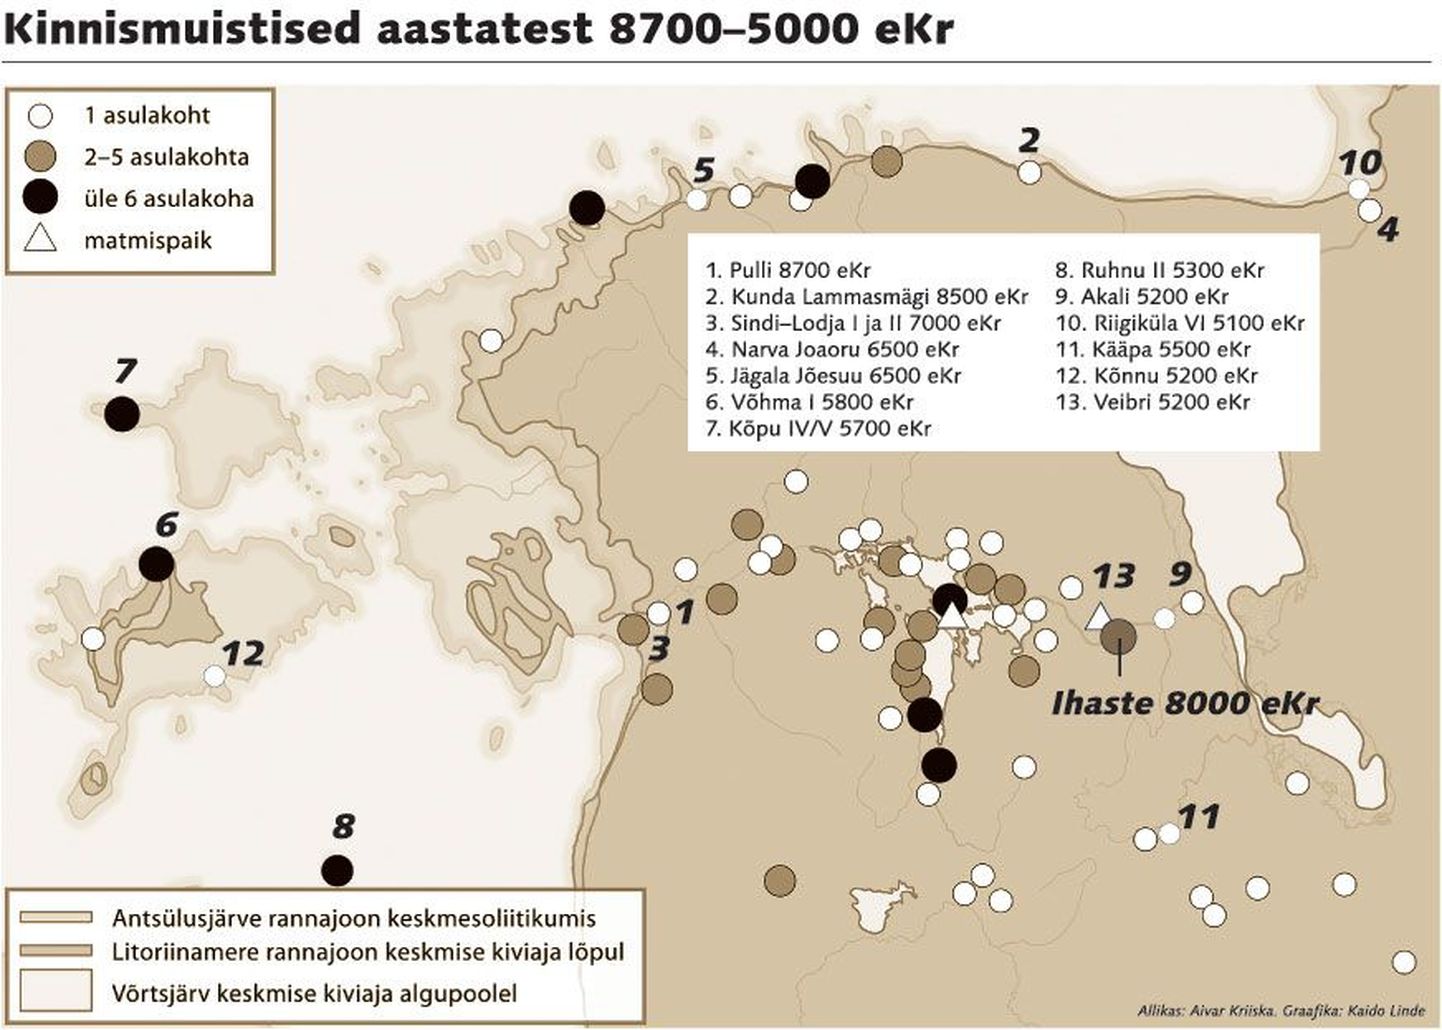 Kinnismuistised aastatest 8700 - 5000 eKr.